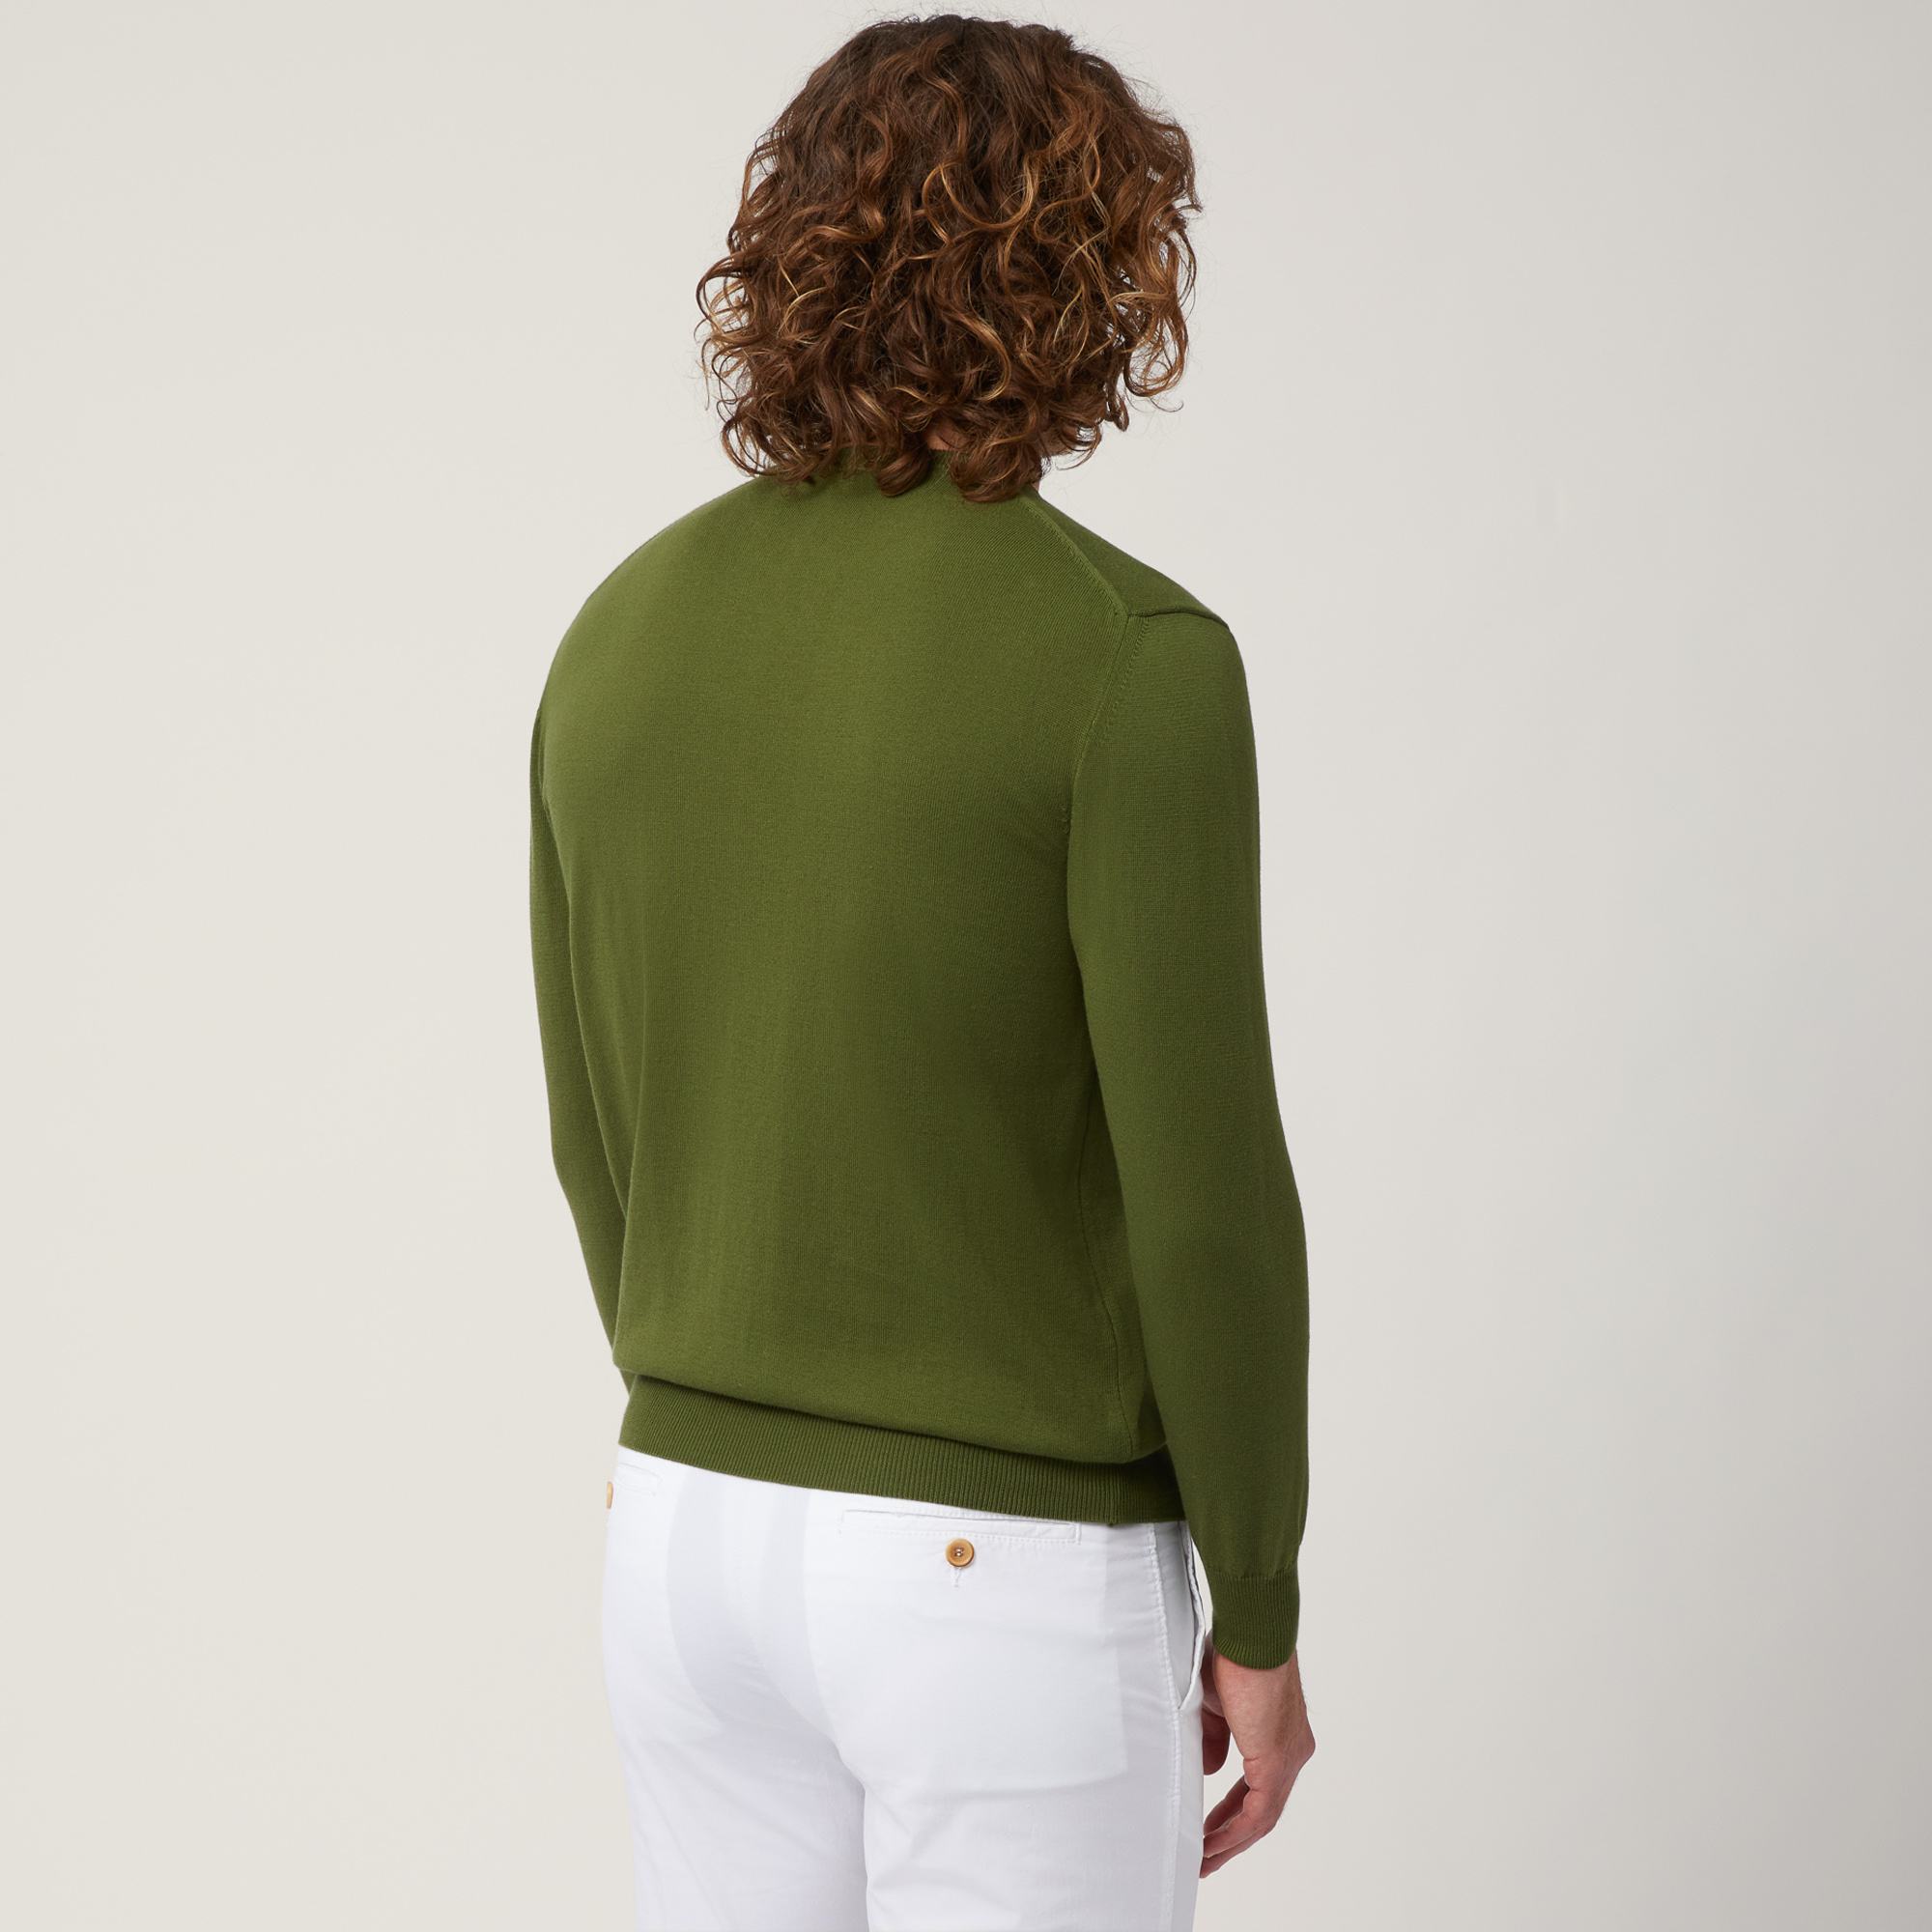 Pullover mit Rundhalsausschnitt aus Baumwolle, Grün, large image number 1